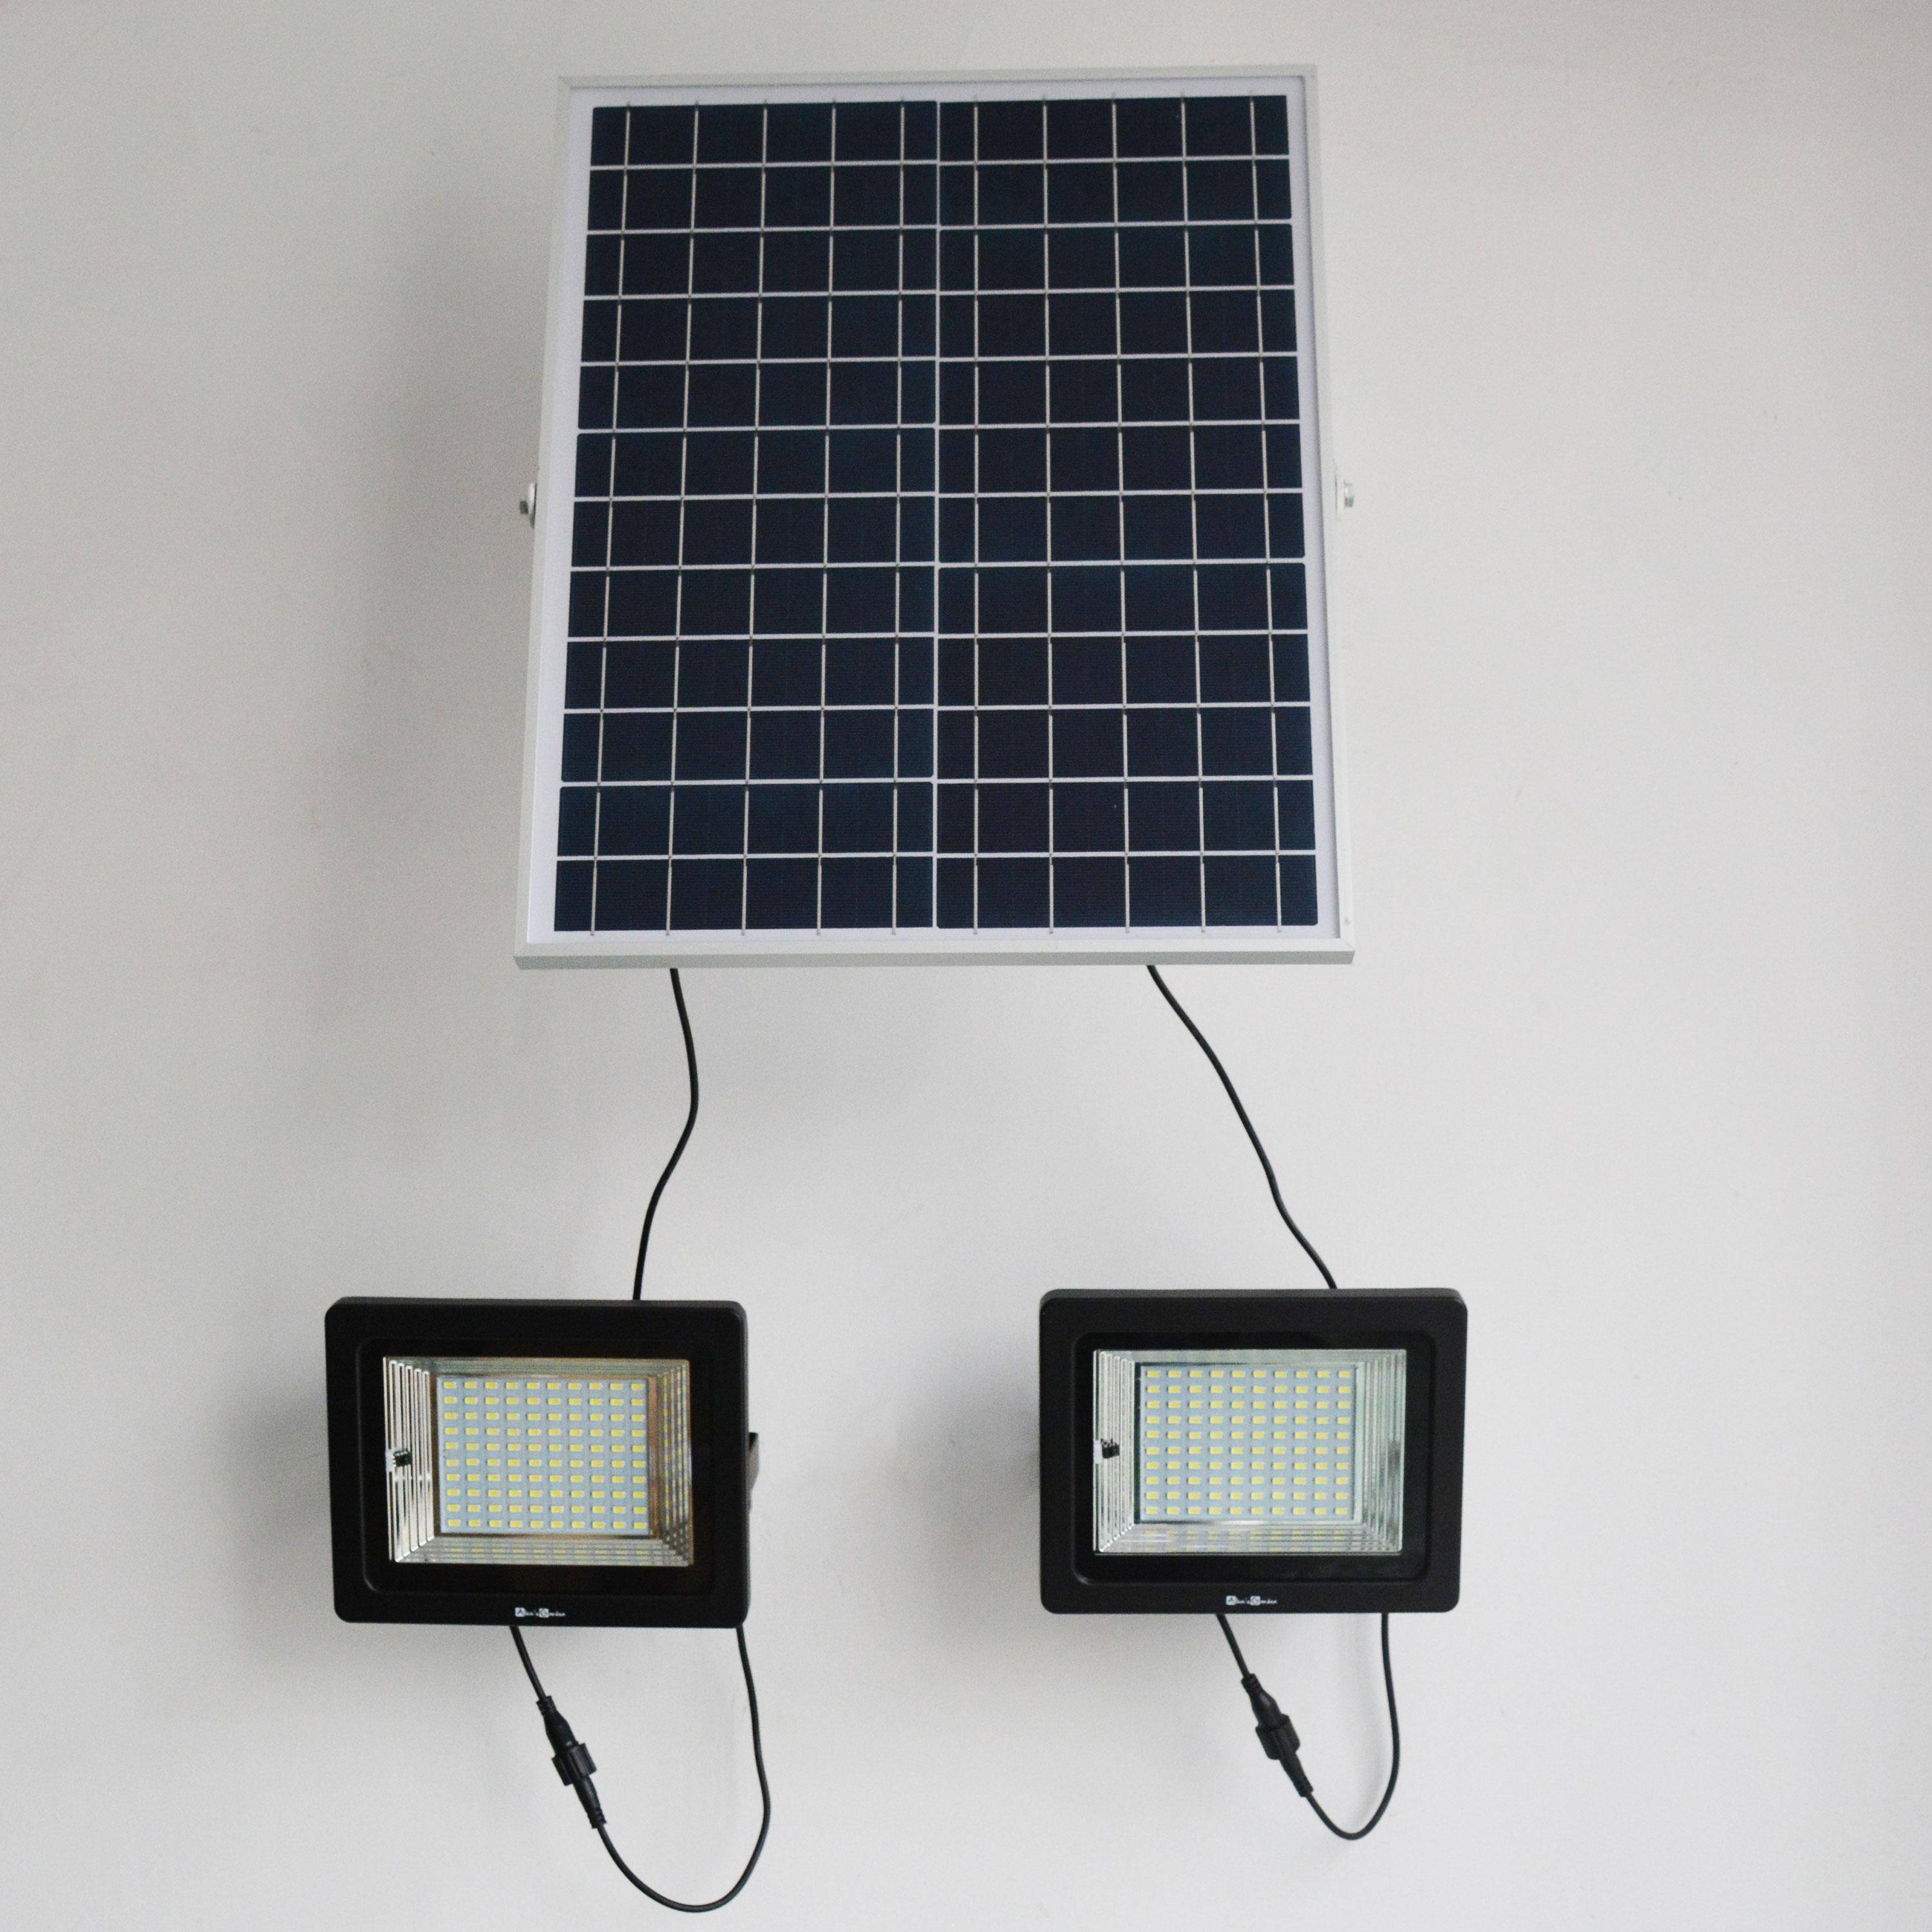 Lot de 2 projecteurs solaires LED 50W avec panneau solaire télécommandé blanc chaud, lampes résistantes à la pluie et autonome, spot extra puissant 1800 lumens équivalent 135W Photo5